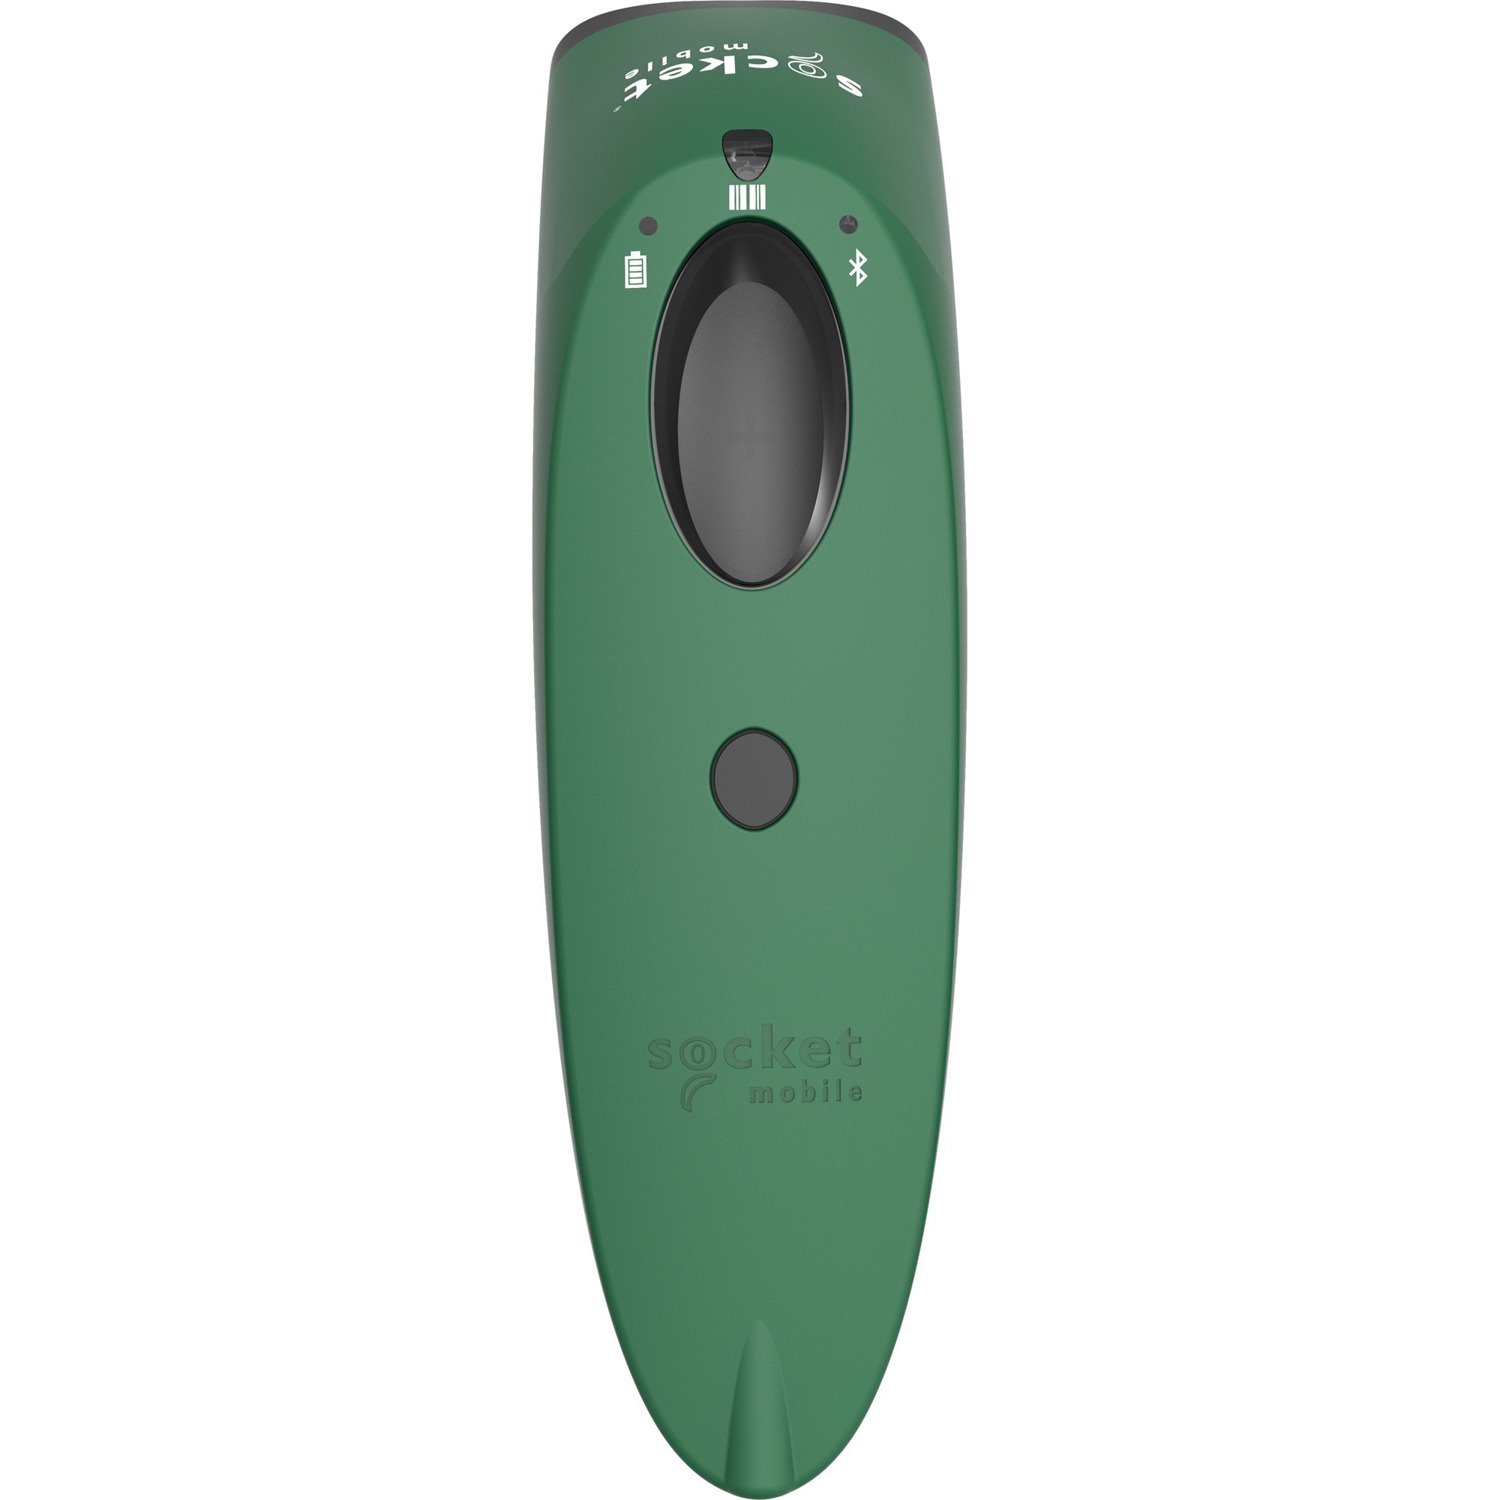 SocketScan&reg; S740, 1D/2D Imager Barcode Scanner, Green - 50 Pack